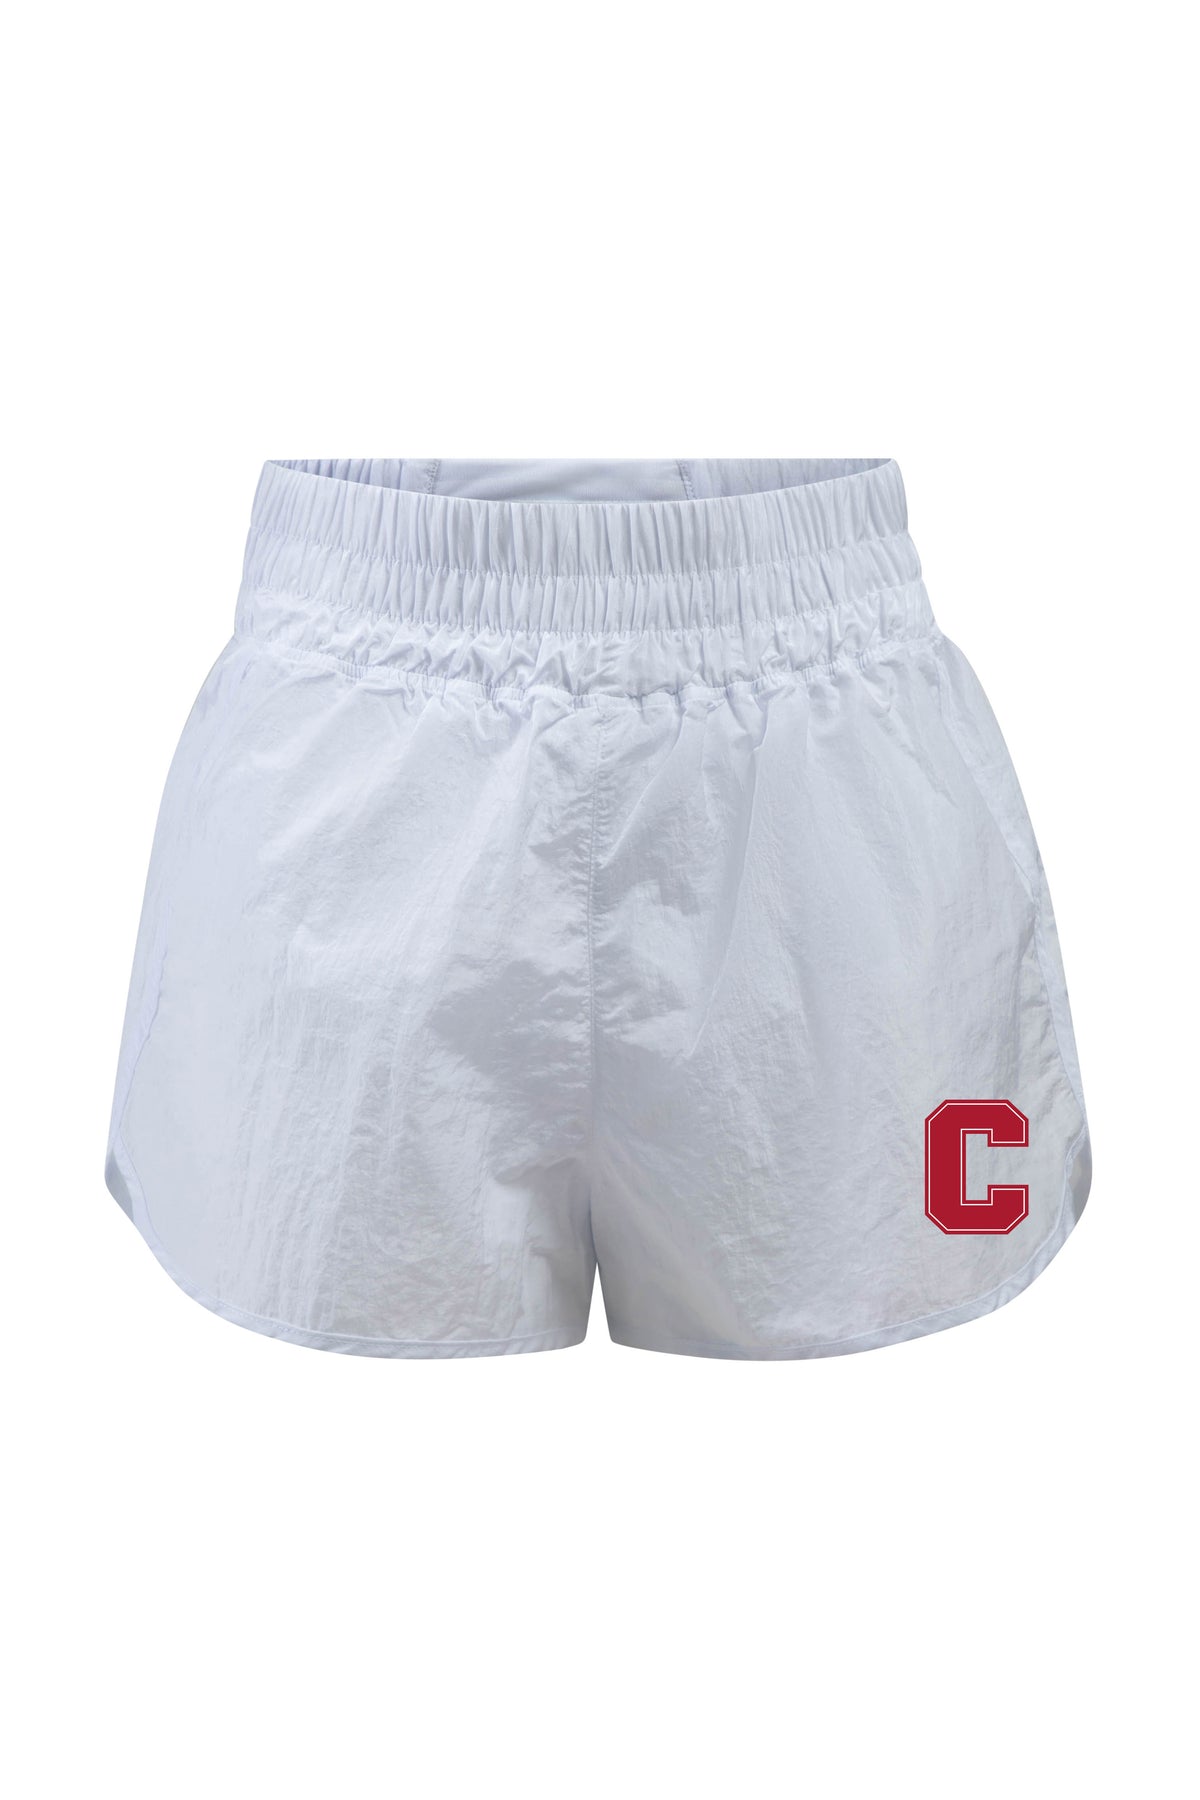 Cornell University Boxer Short